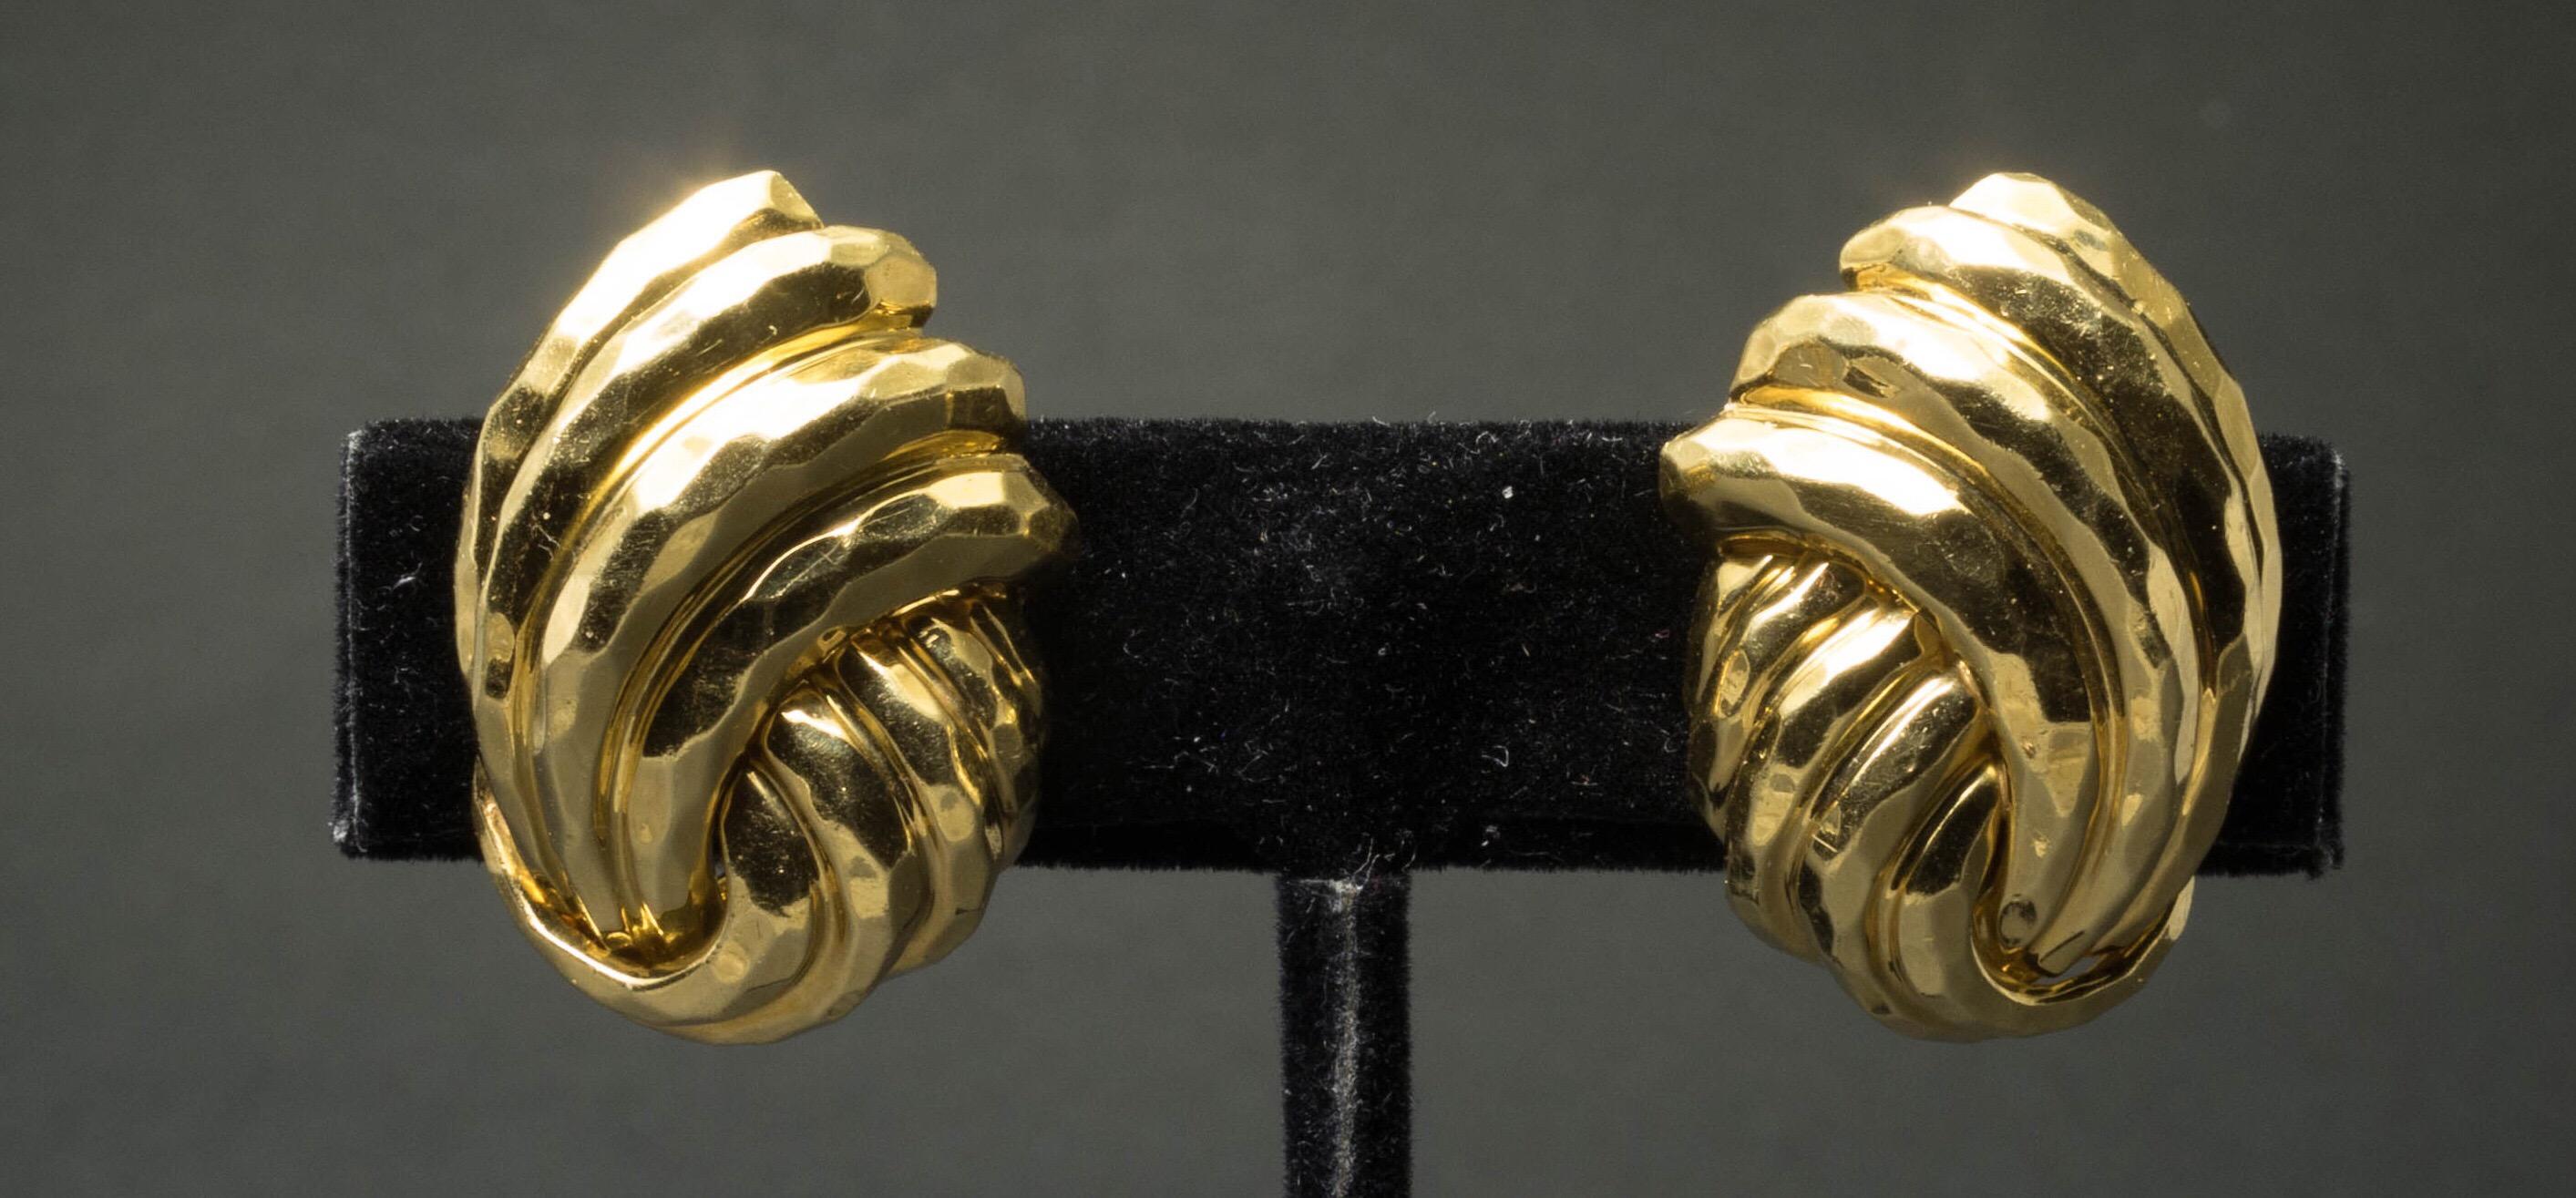 Une paire d'élégantes boucles d'oreilles clips en or jaune 18K martelé à la main par Henry Dunay. Des années 1970.
Signé Dunay. 18K 
Longueur : 1,1